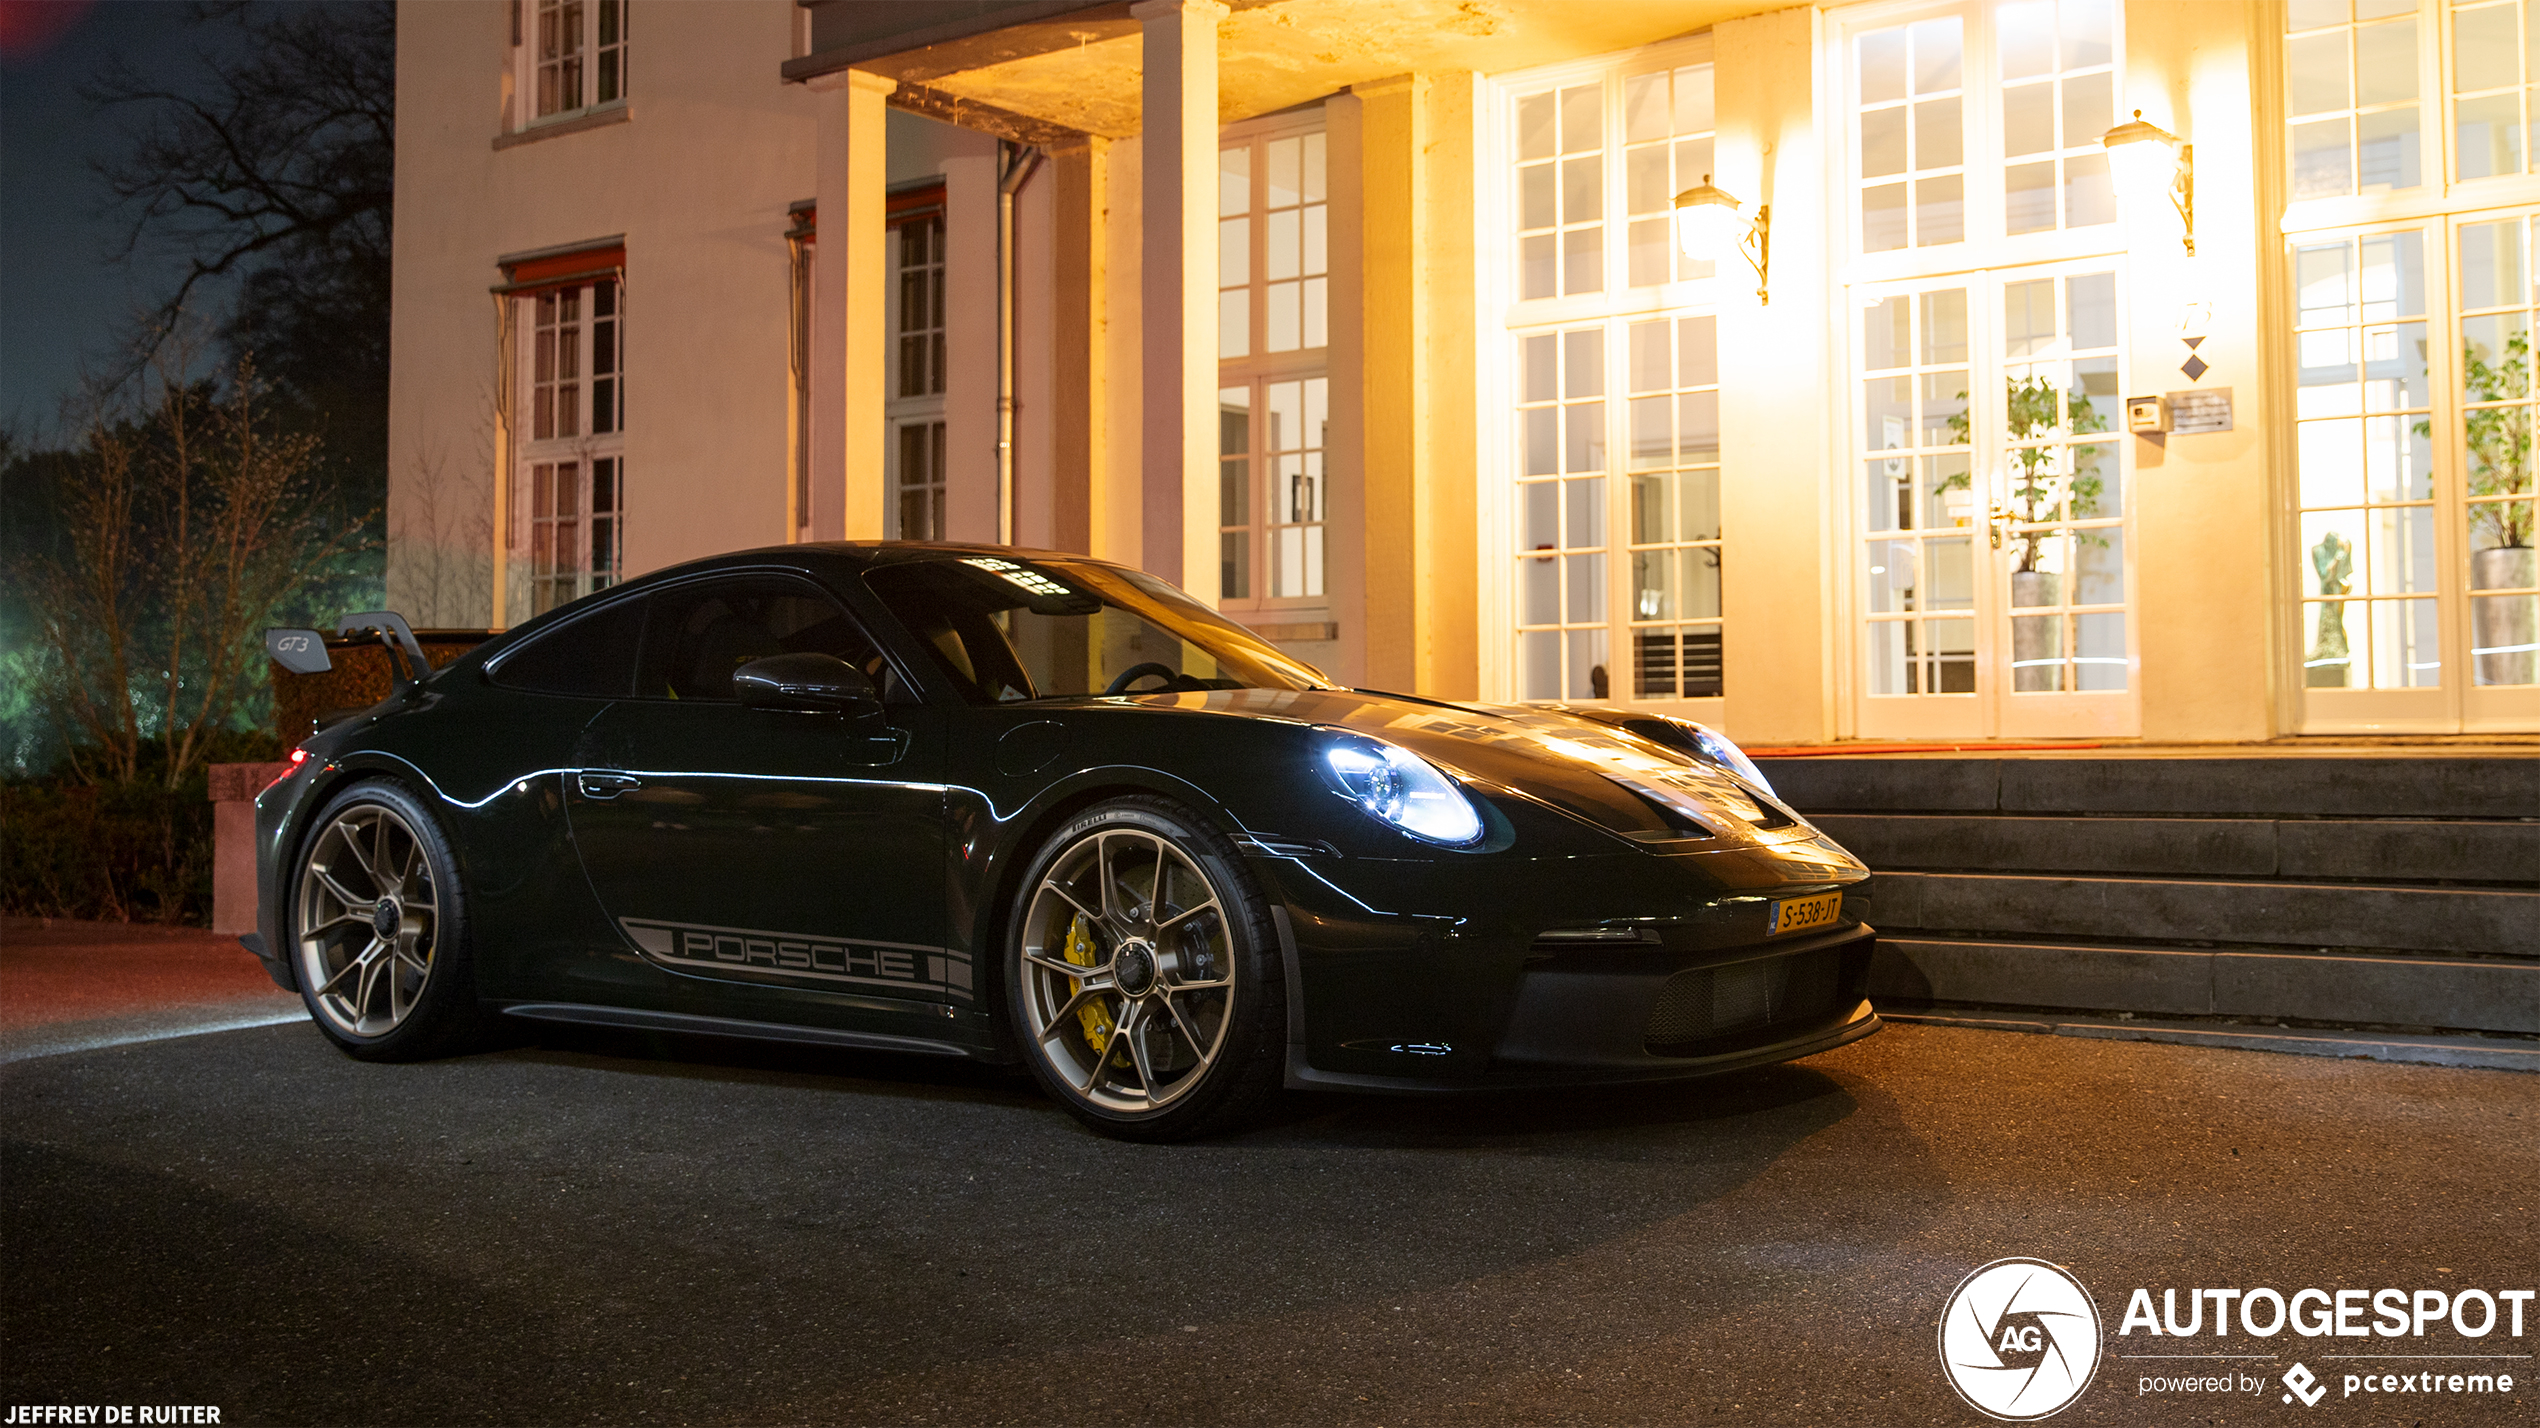 Nachtelijke fotoshoot met Porsche GT3